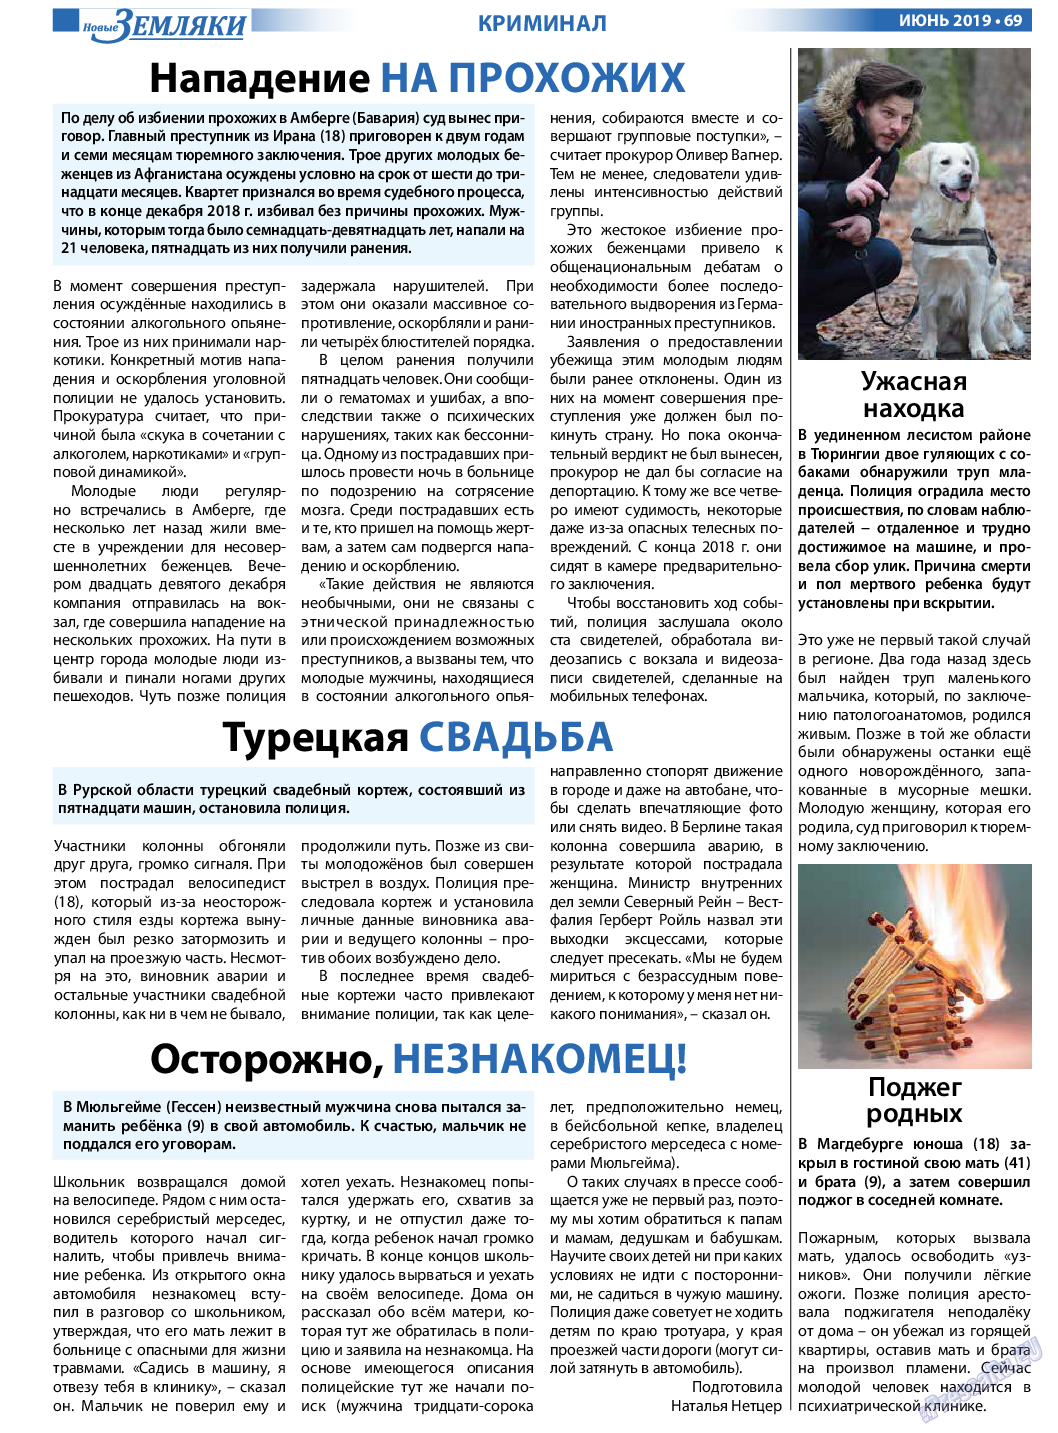 Новые Земляки, газета. 2019 №6 стр.69